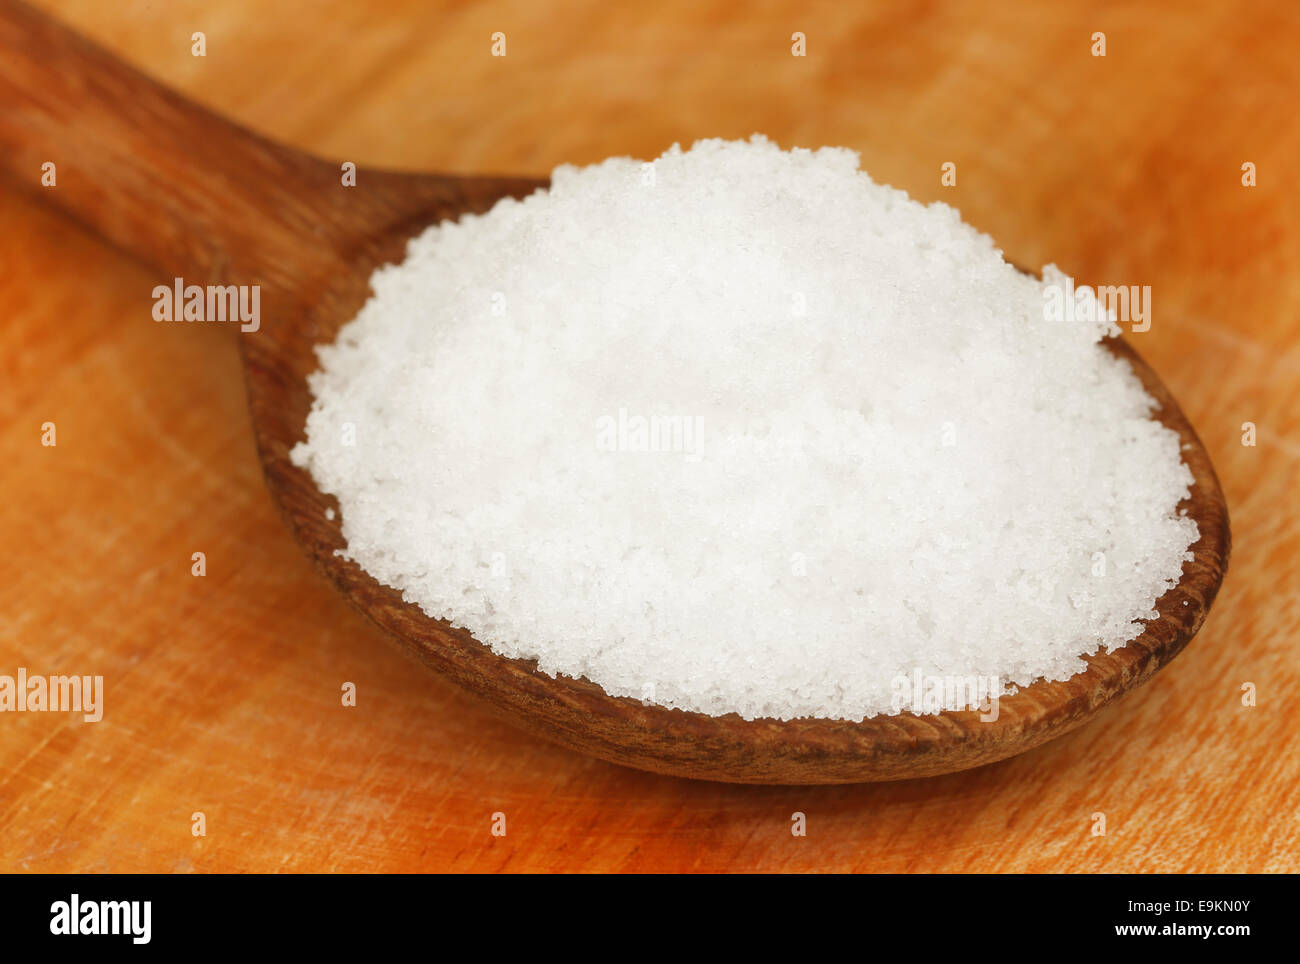 Table salt on wooden spoon Stock Photo